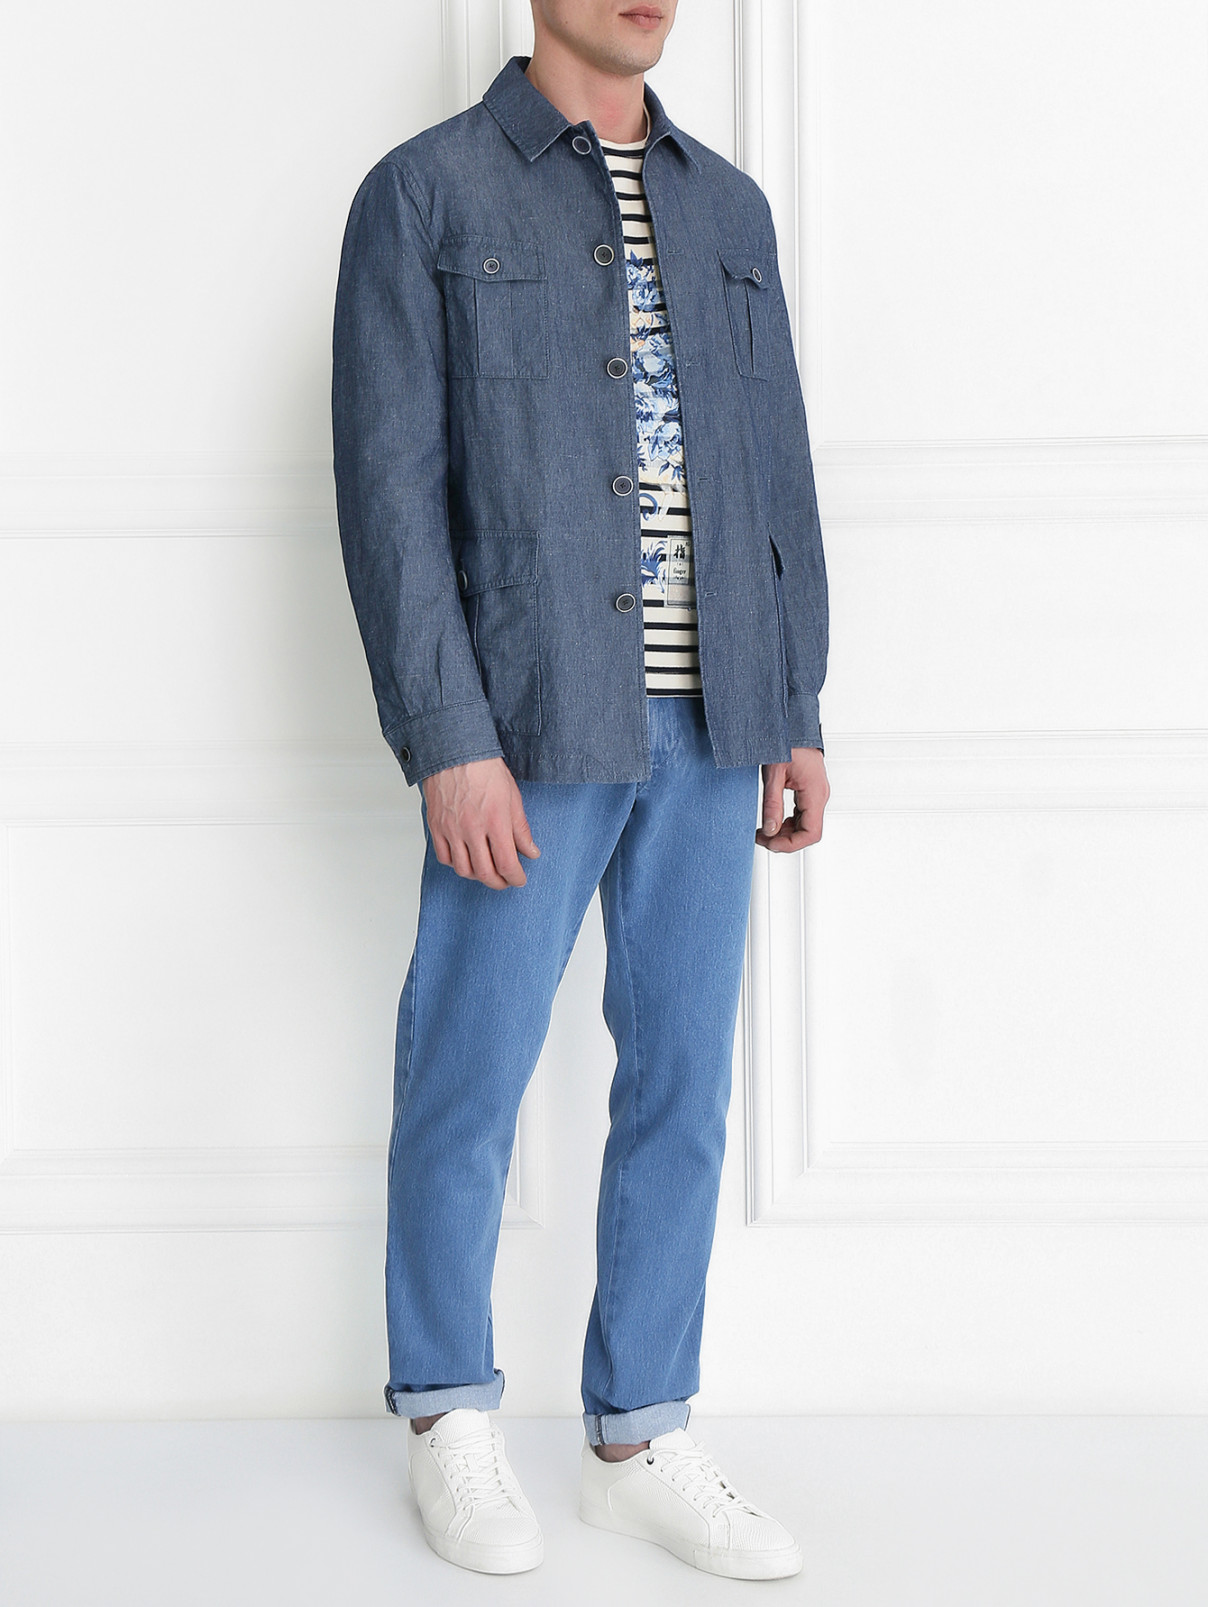 Куртка из хлопка на пуговицах с накладными карманами LARDINI  –  Модель Общий вид  – Цвет:  Синий